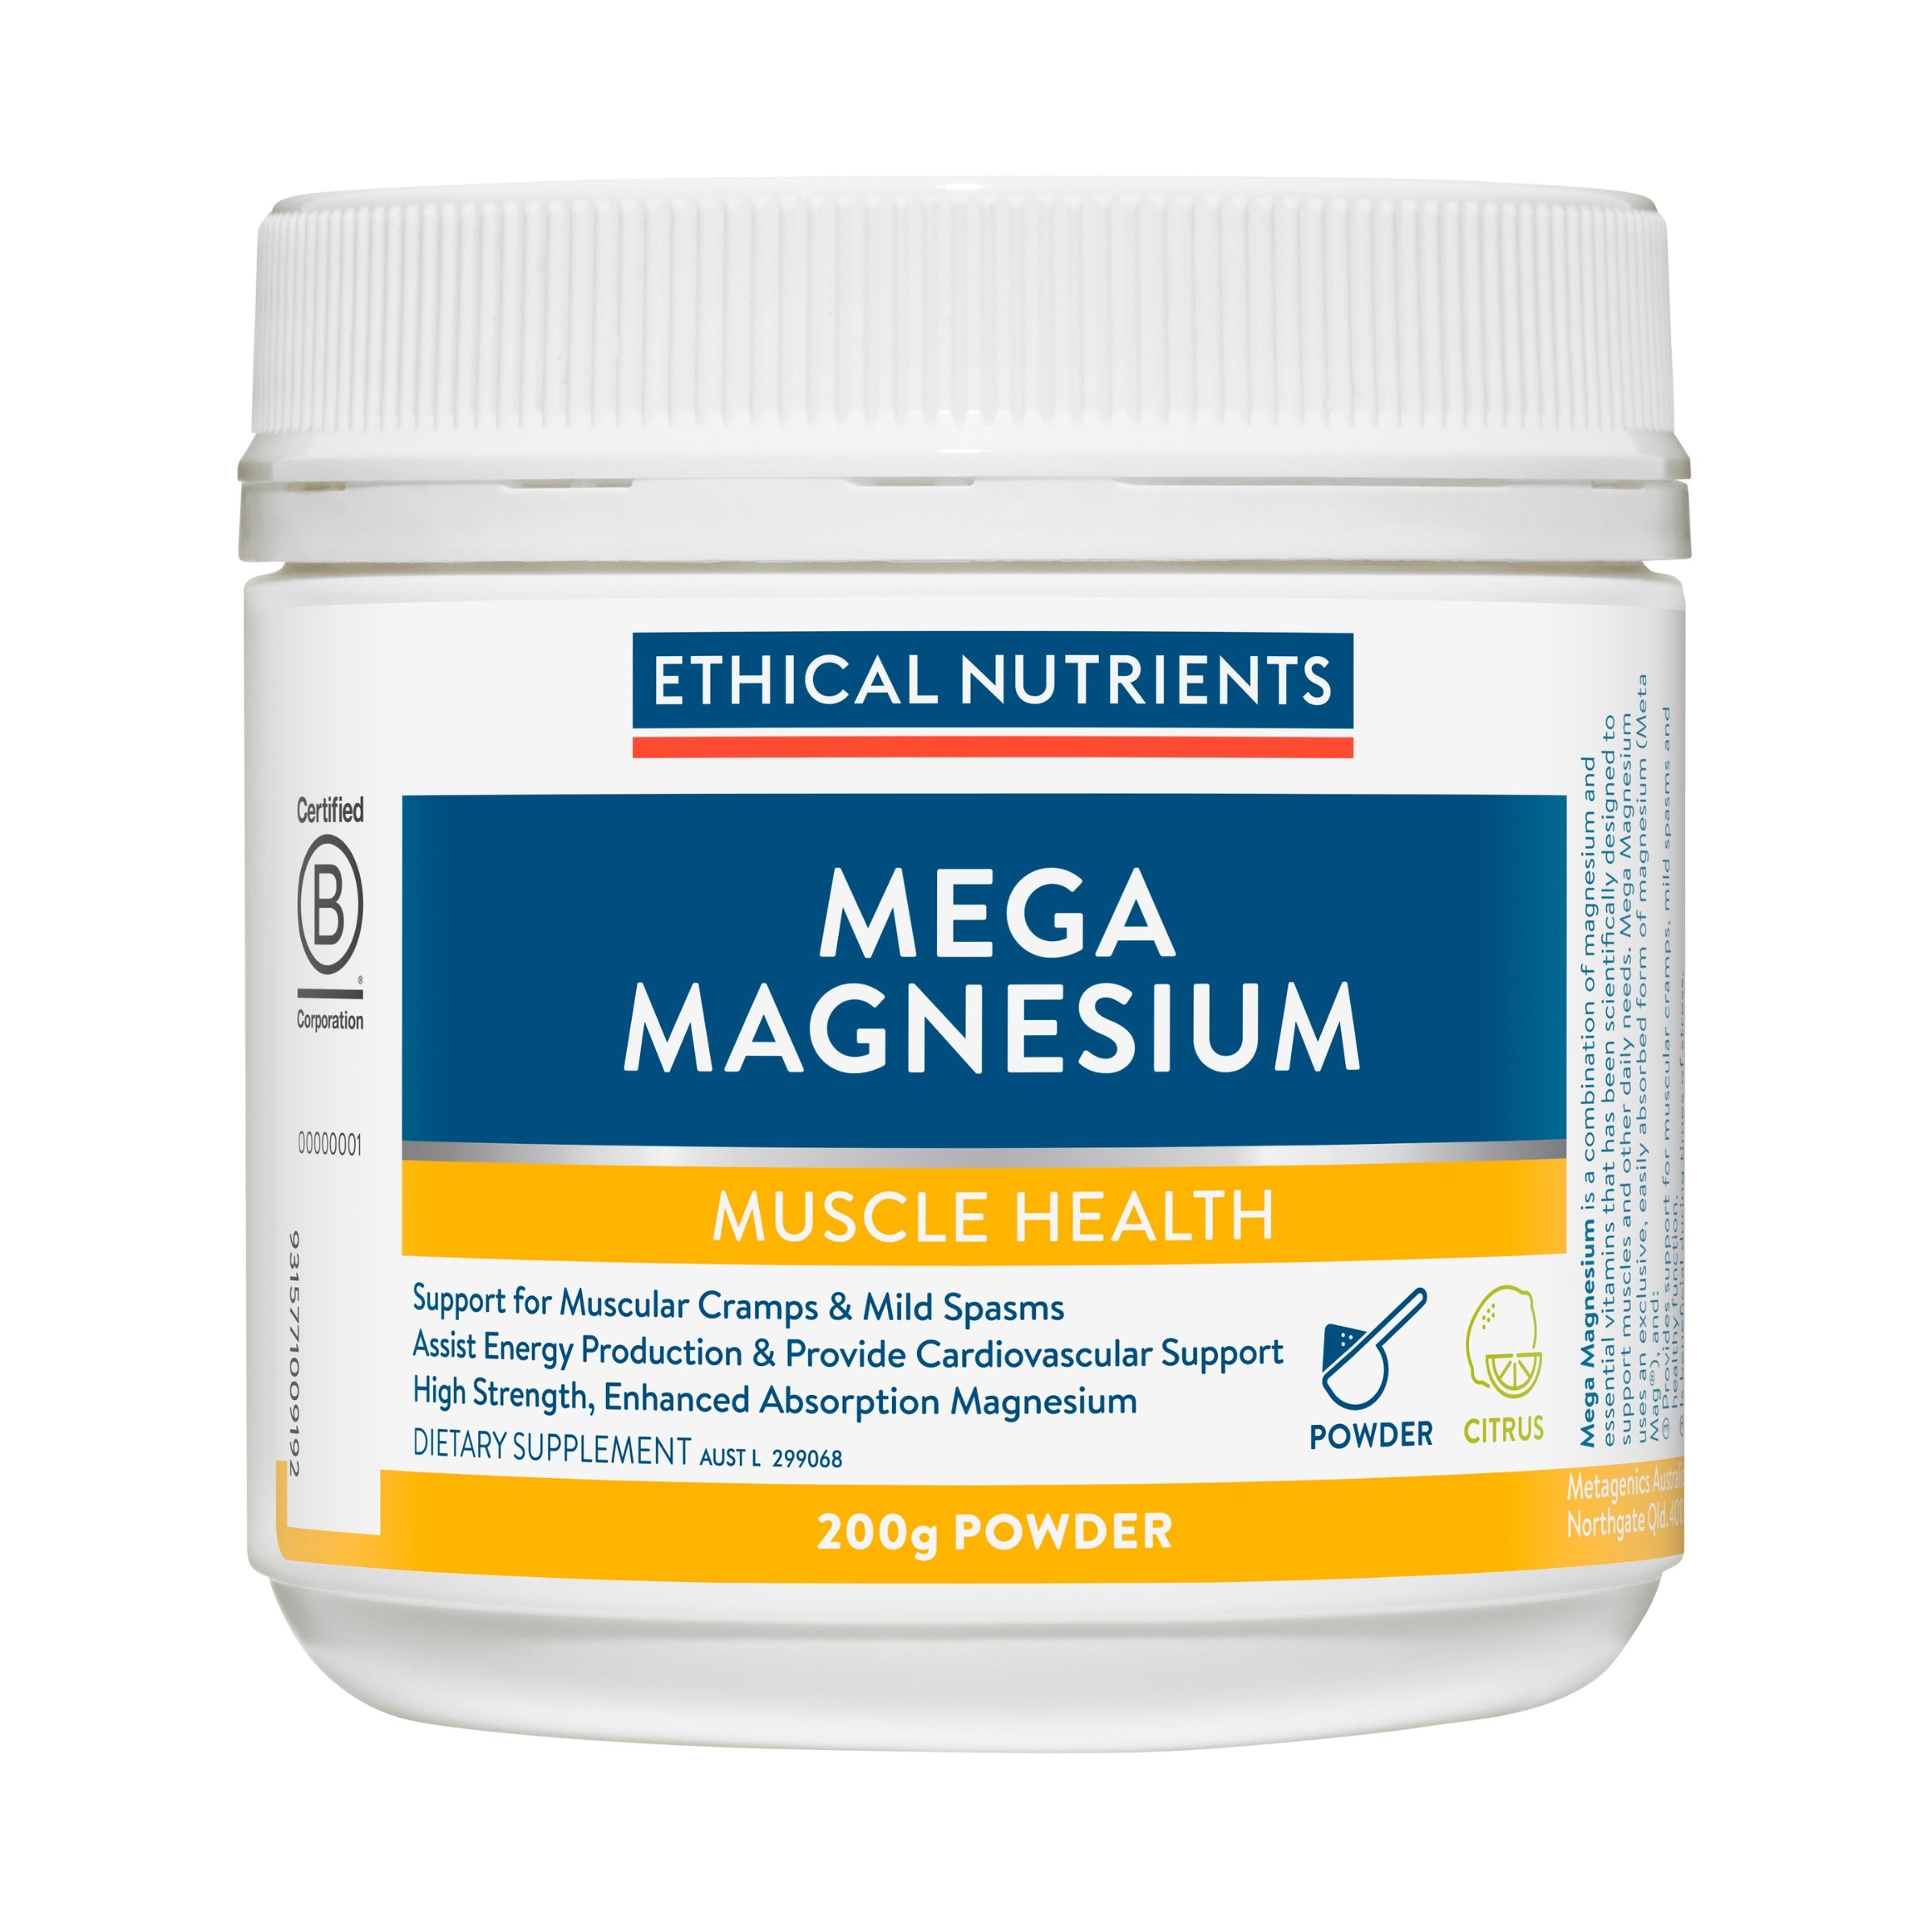 Ethical Nutrients Mega Magnesium Powder Citrus 200g #size & flavour_citrus 200g